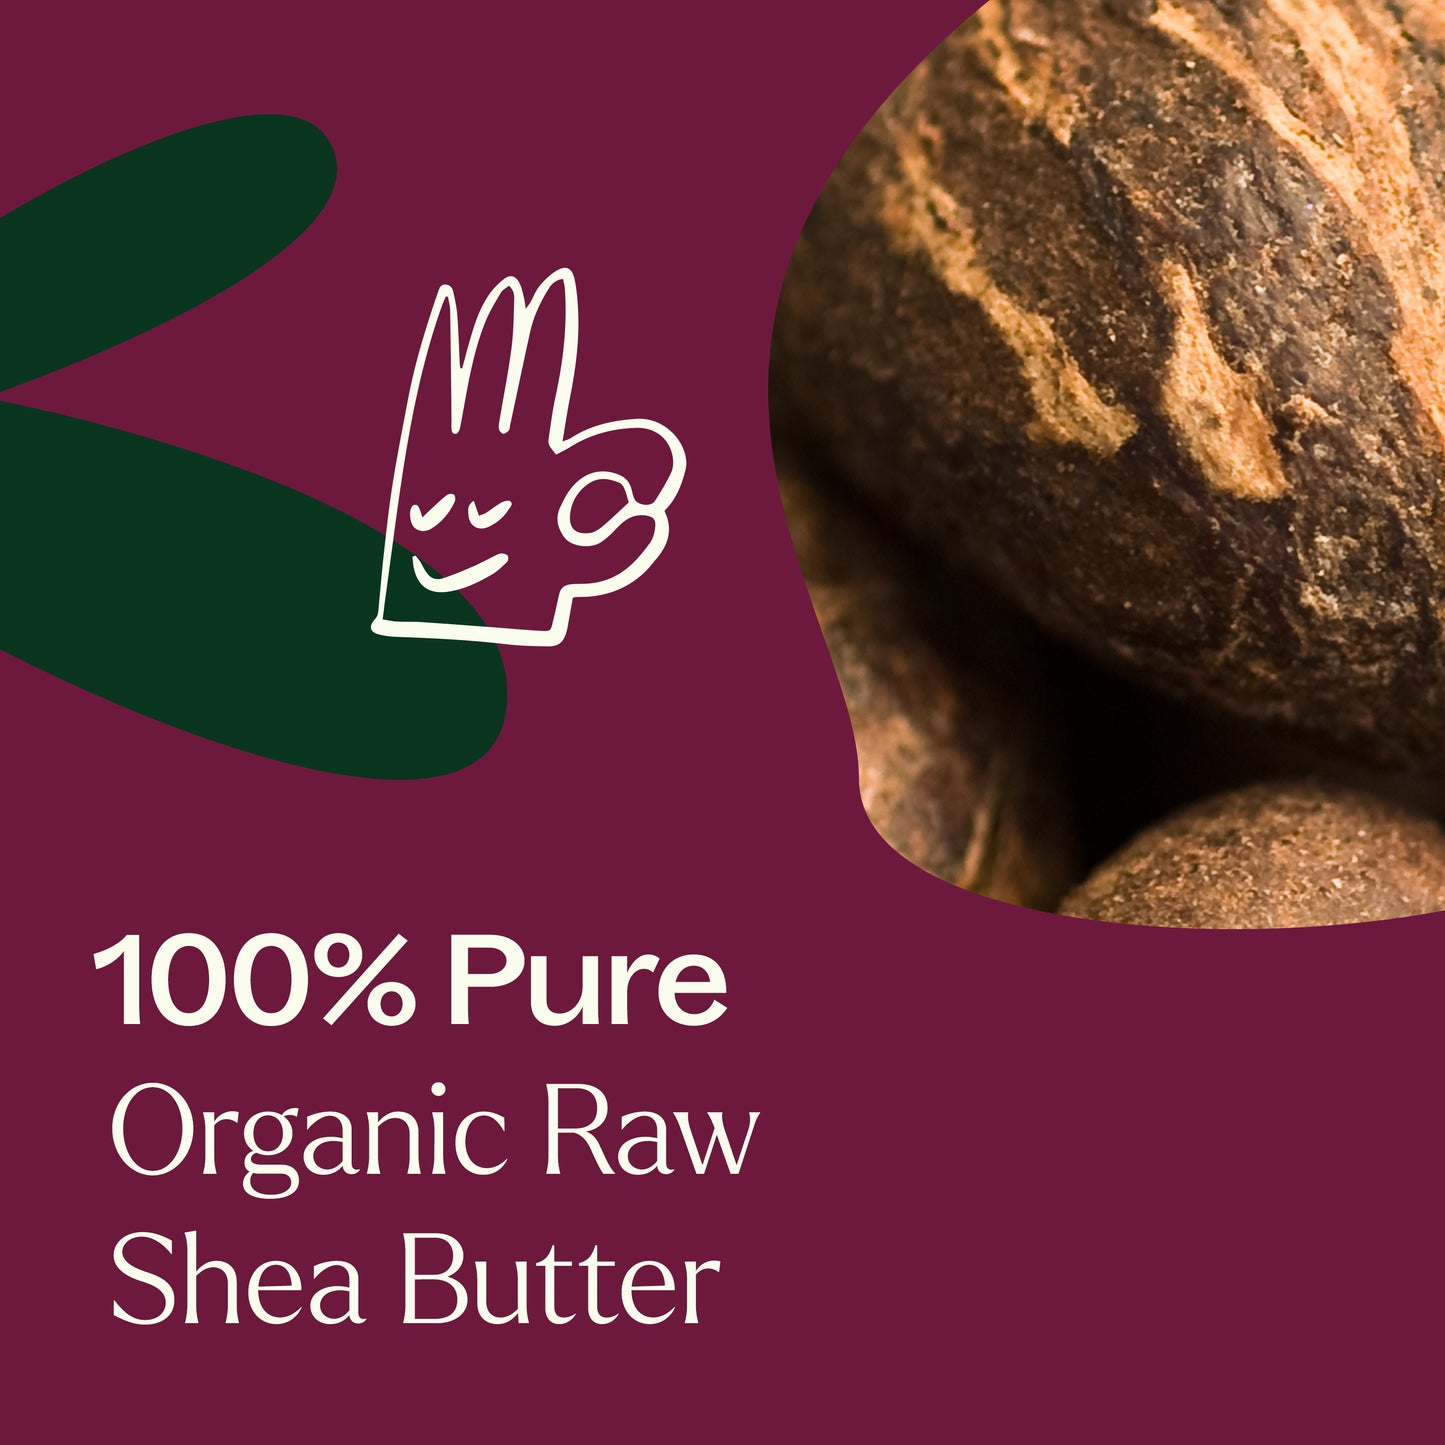 100% pure organic raw shea butter